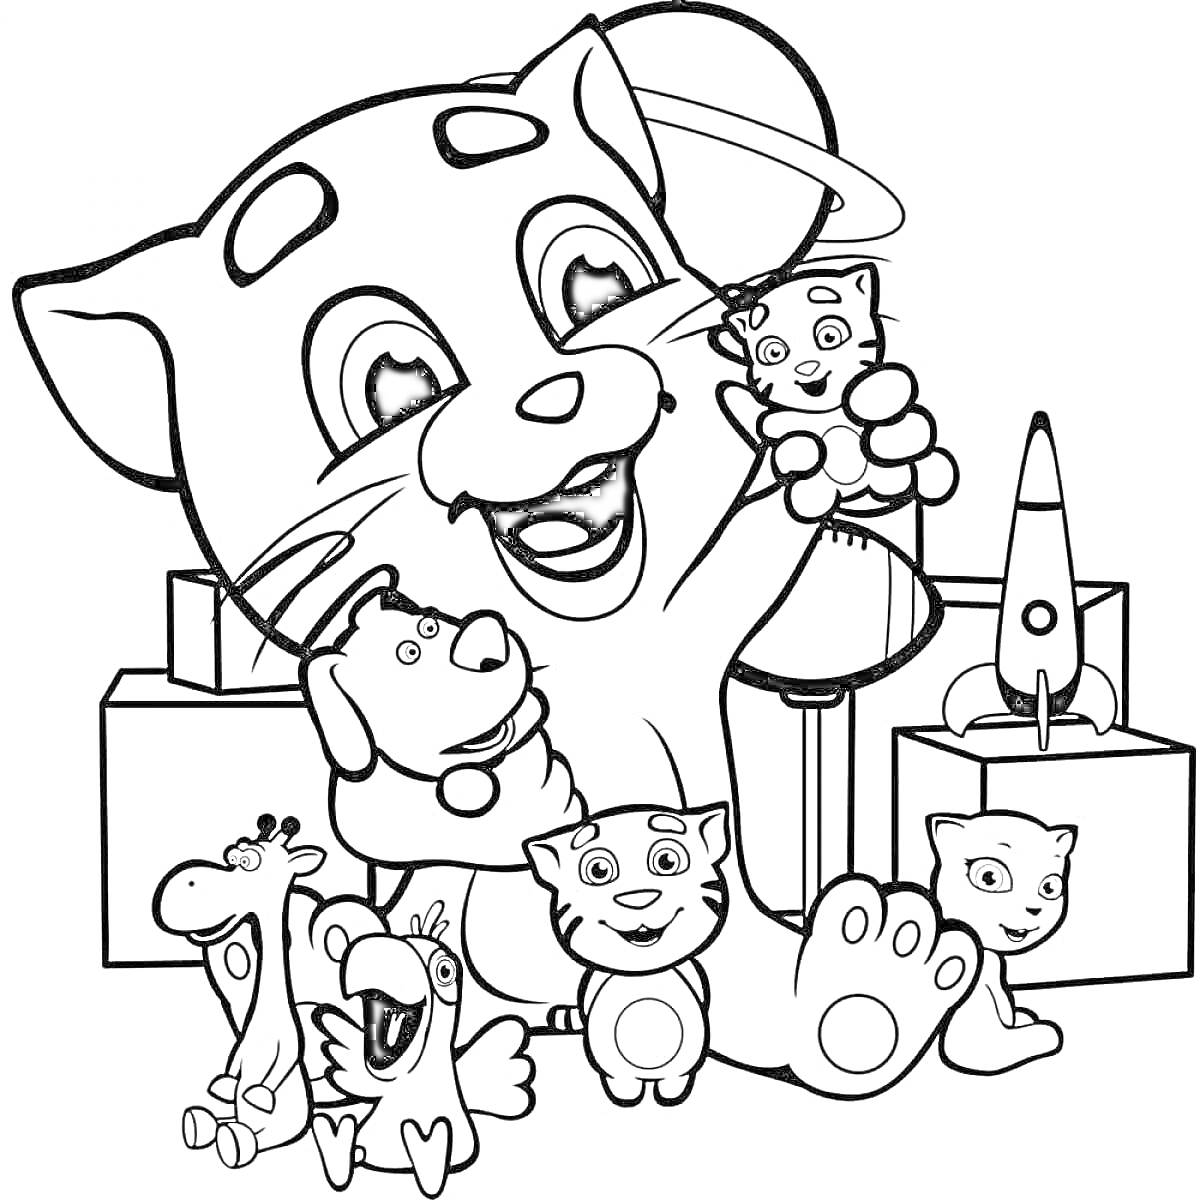 Раскраска Том и игрушки - Том, Анжела, ракета, коробки, игрушки: жираф, собака, утка и котенок